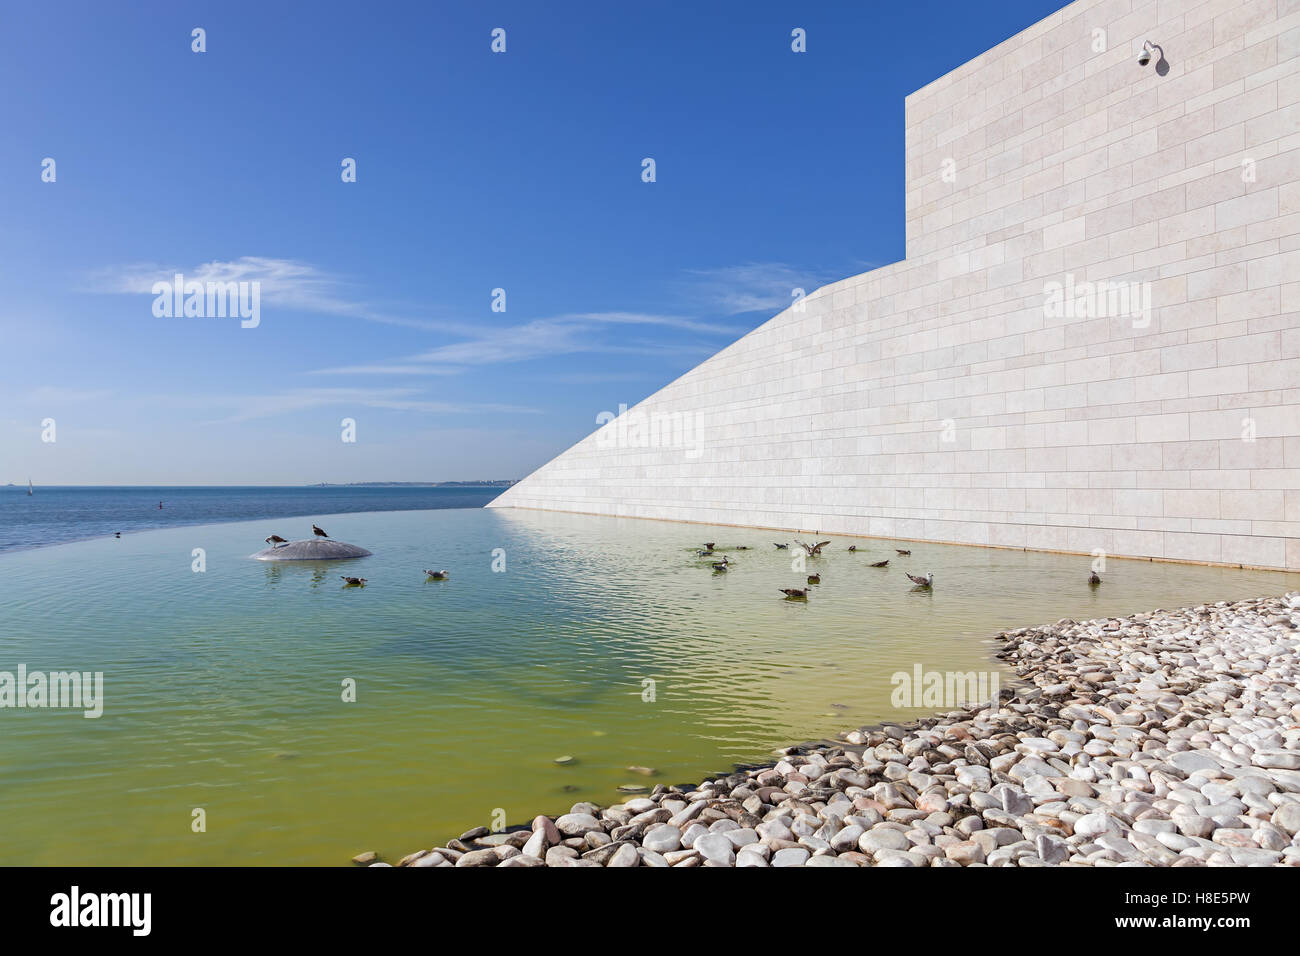 Detalle de la Fundación Champalimaud, con vistas sobre el río Tajo y el Océano Atlántico. Centro de lo desconocido. Lisboa. Foto de stock